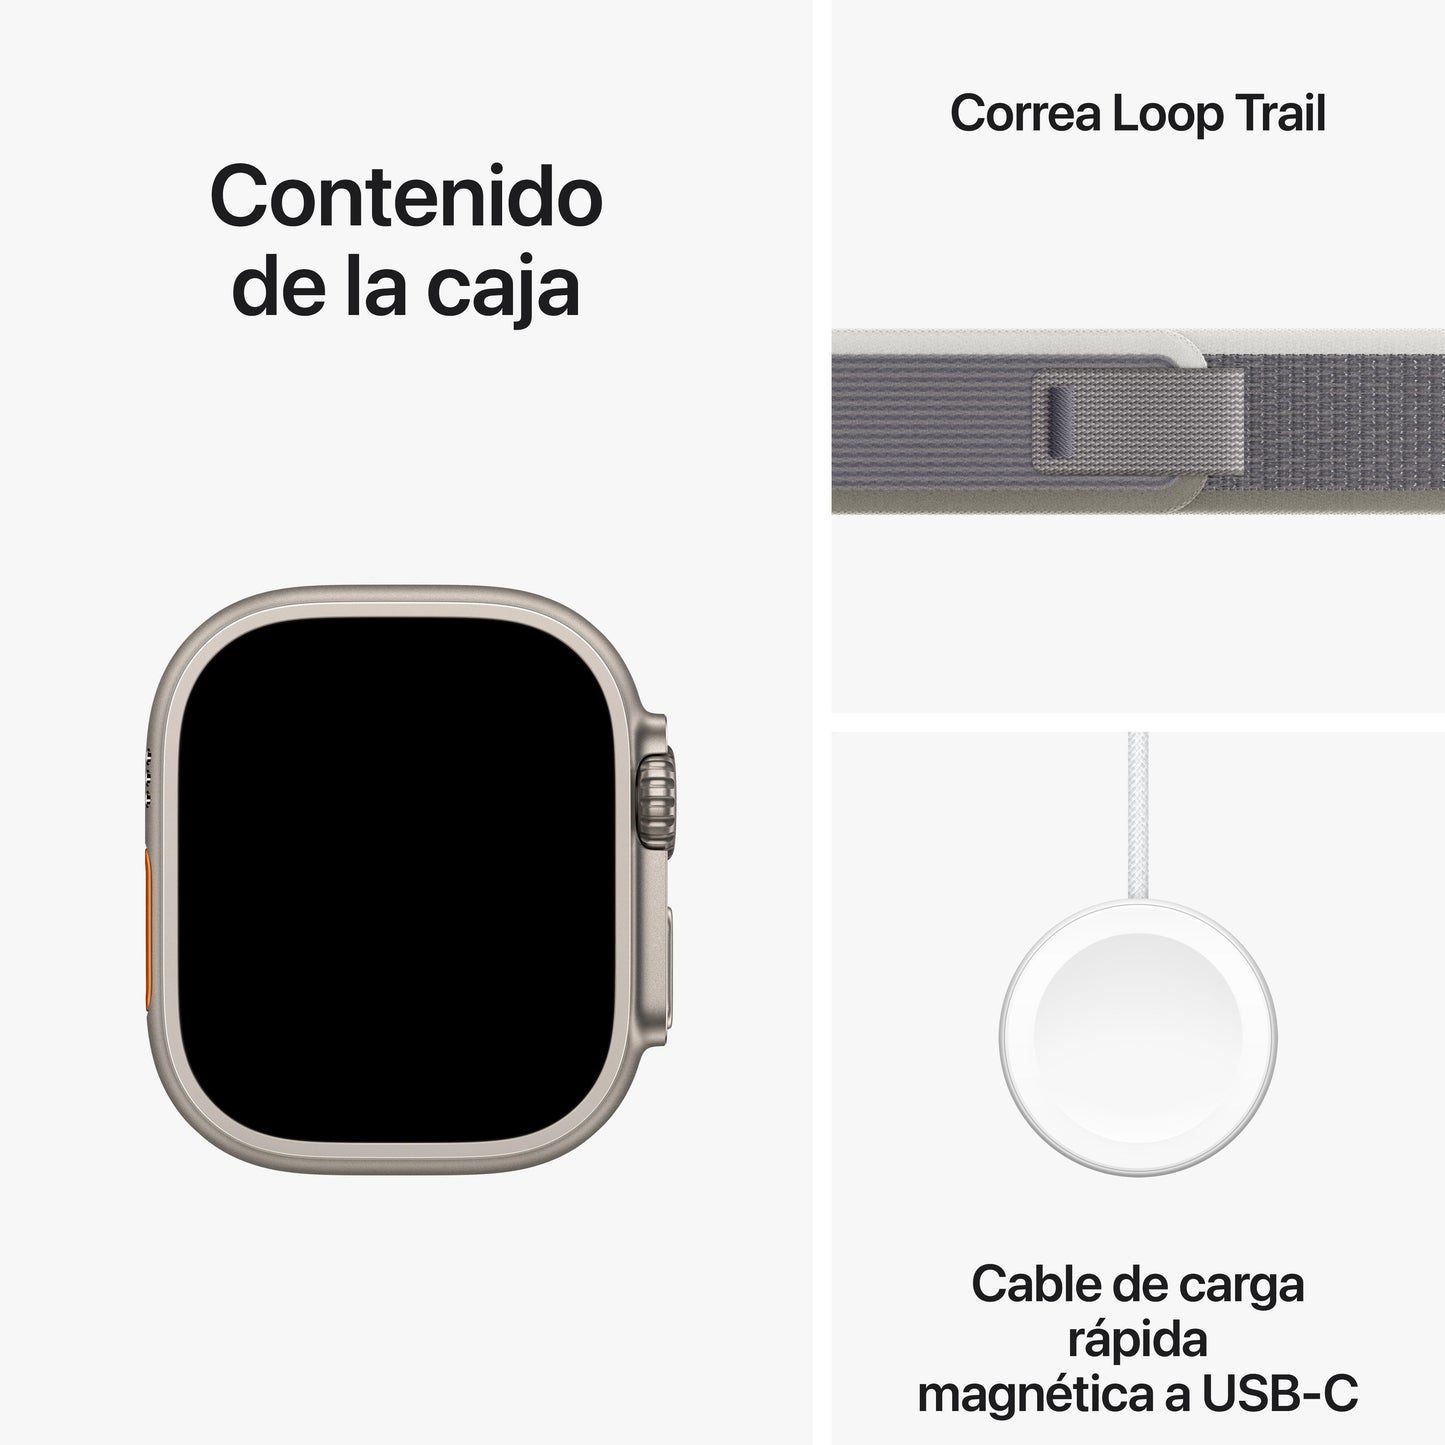 Apple Watch Ultra 2 (GPS + Cellular) - Caja de titanio de 49 mm - Correa Loop Trail verde/gris - Talla S/M